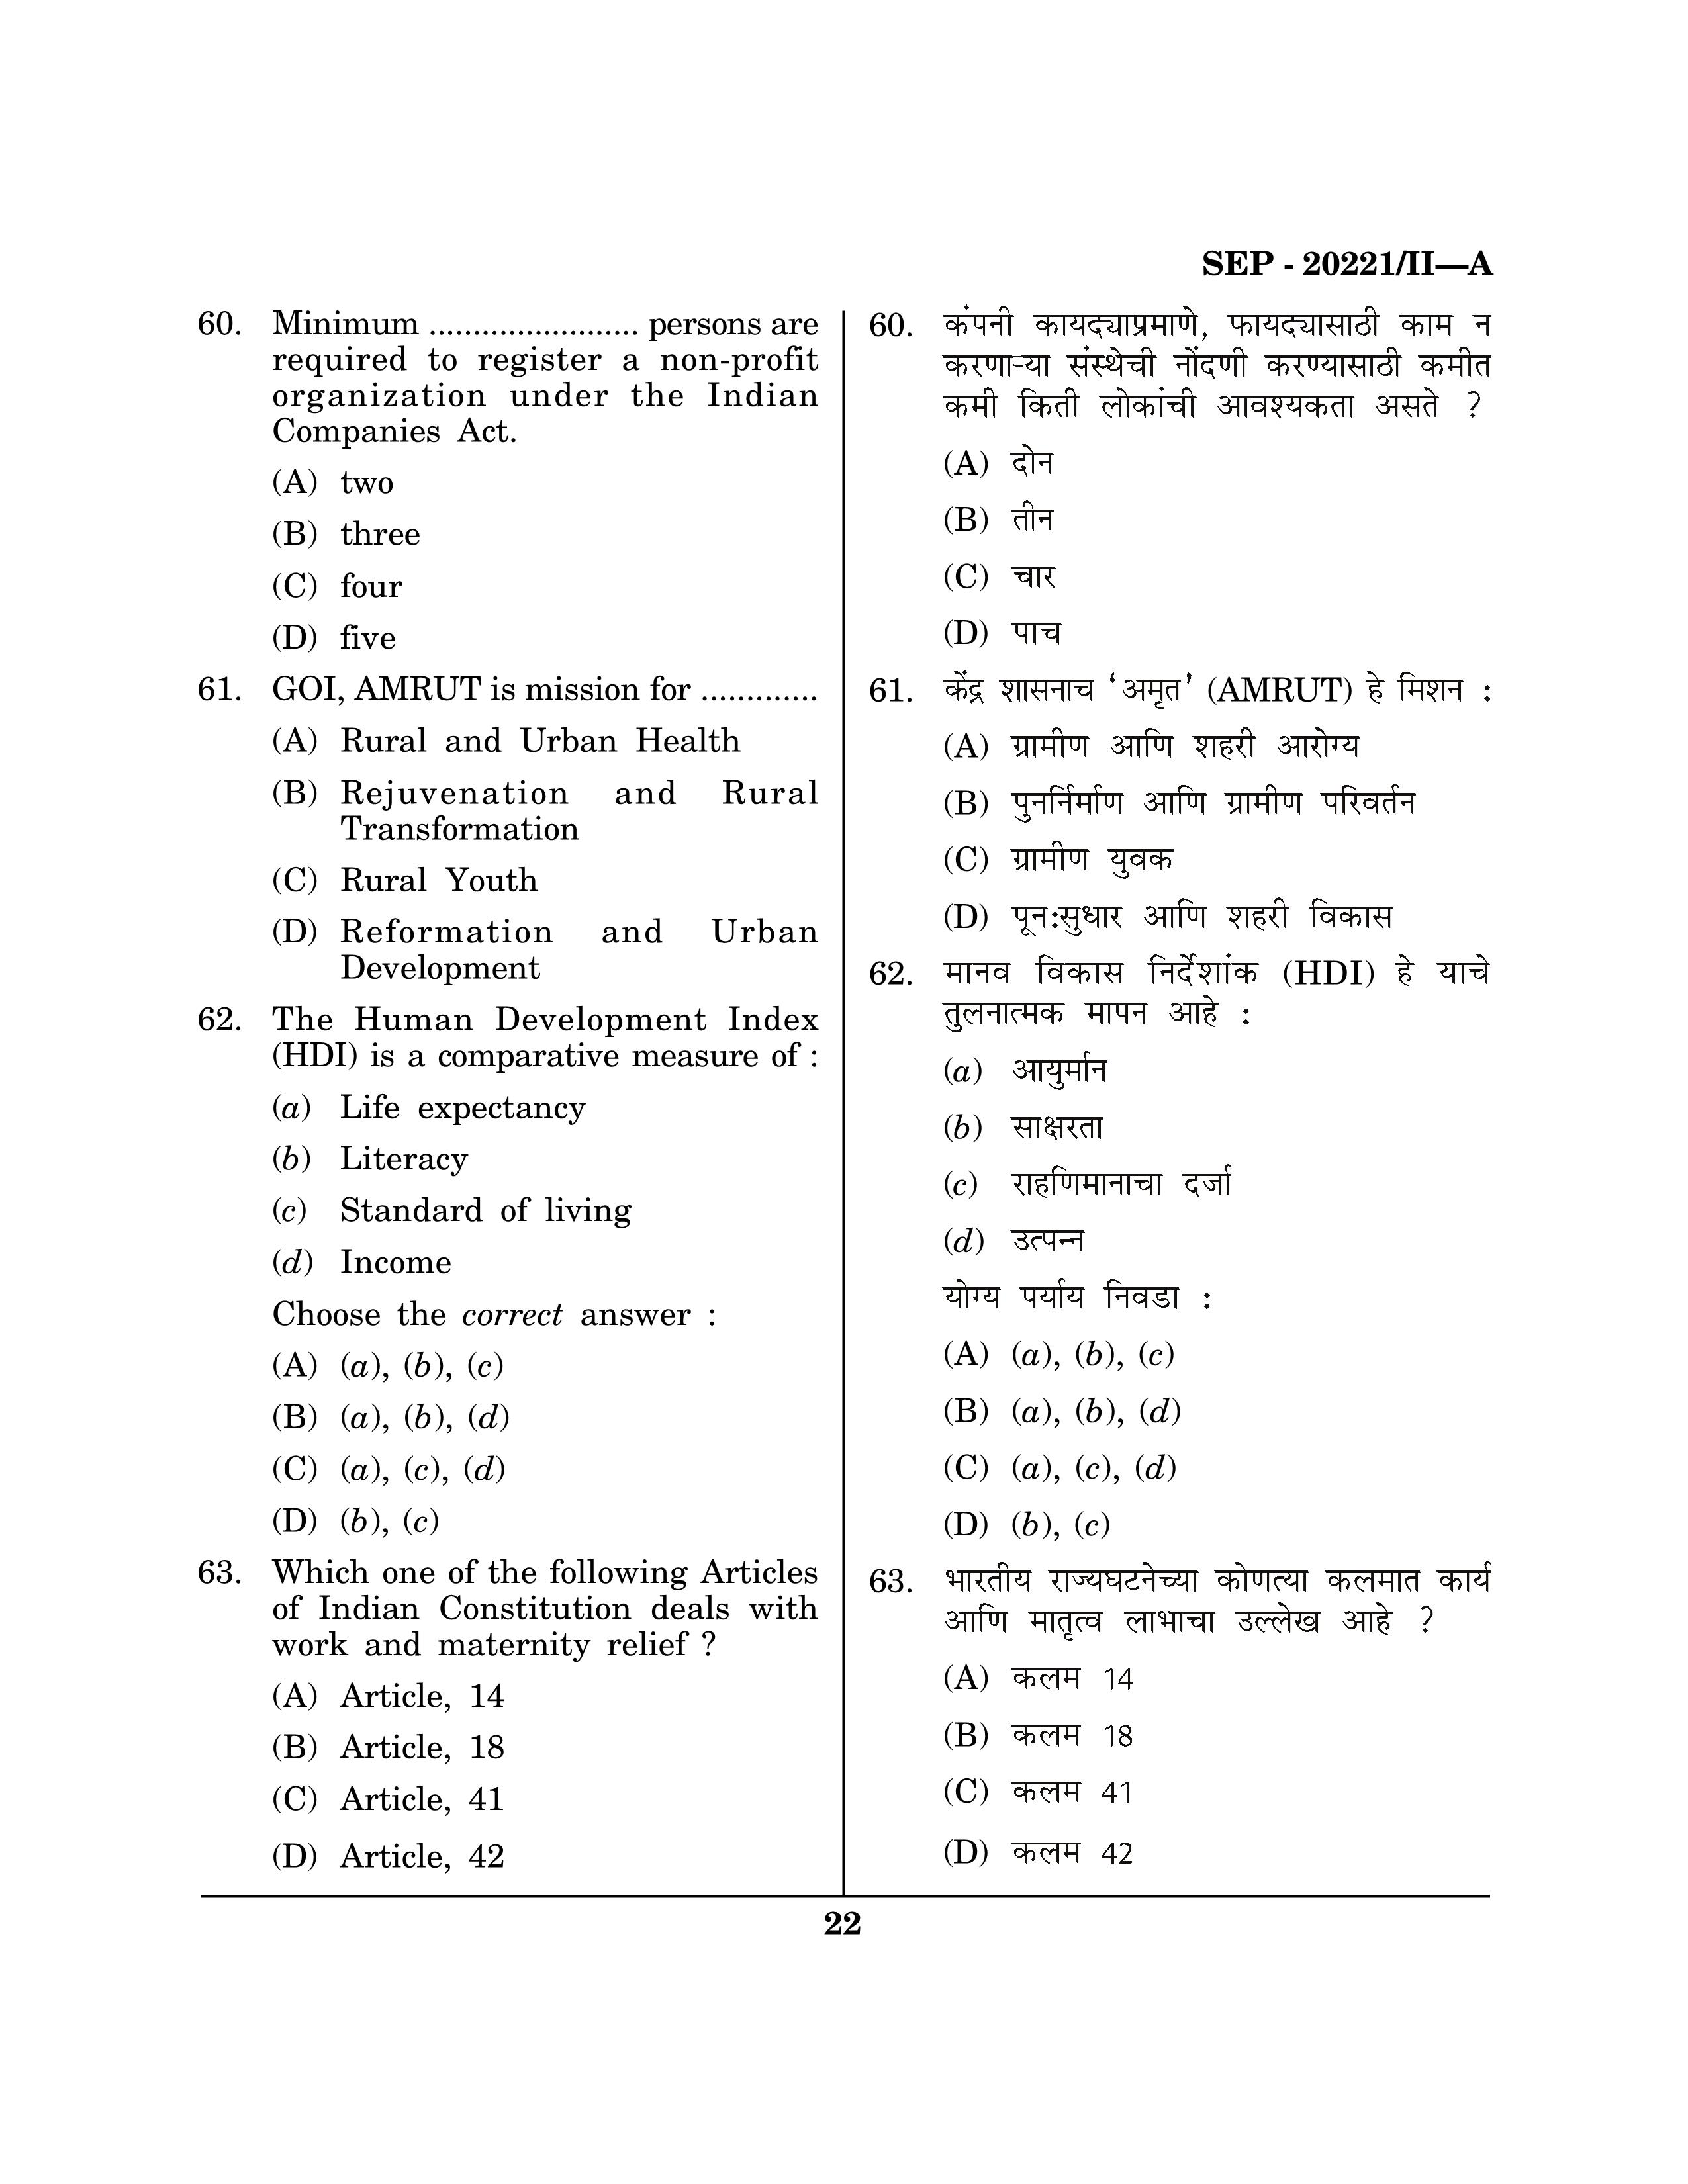 Maharashtra SET Social Work Exam Question Paper September 2021 21